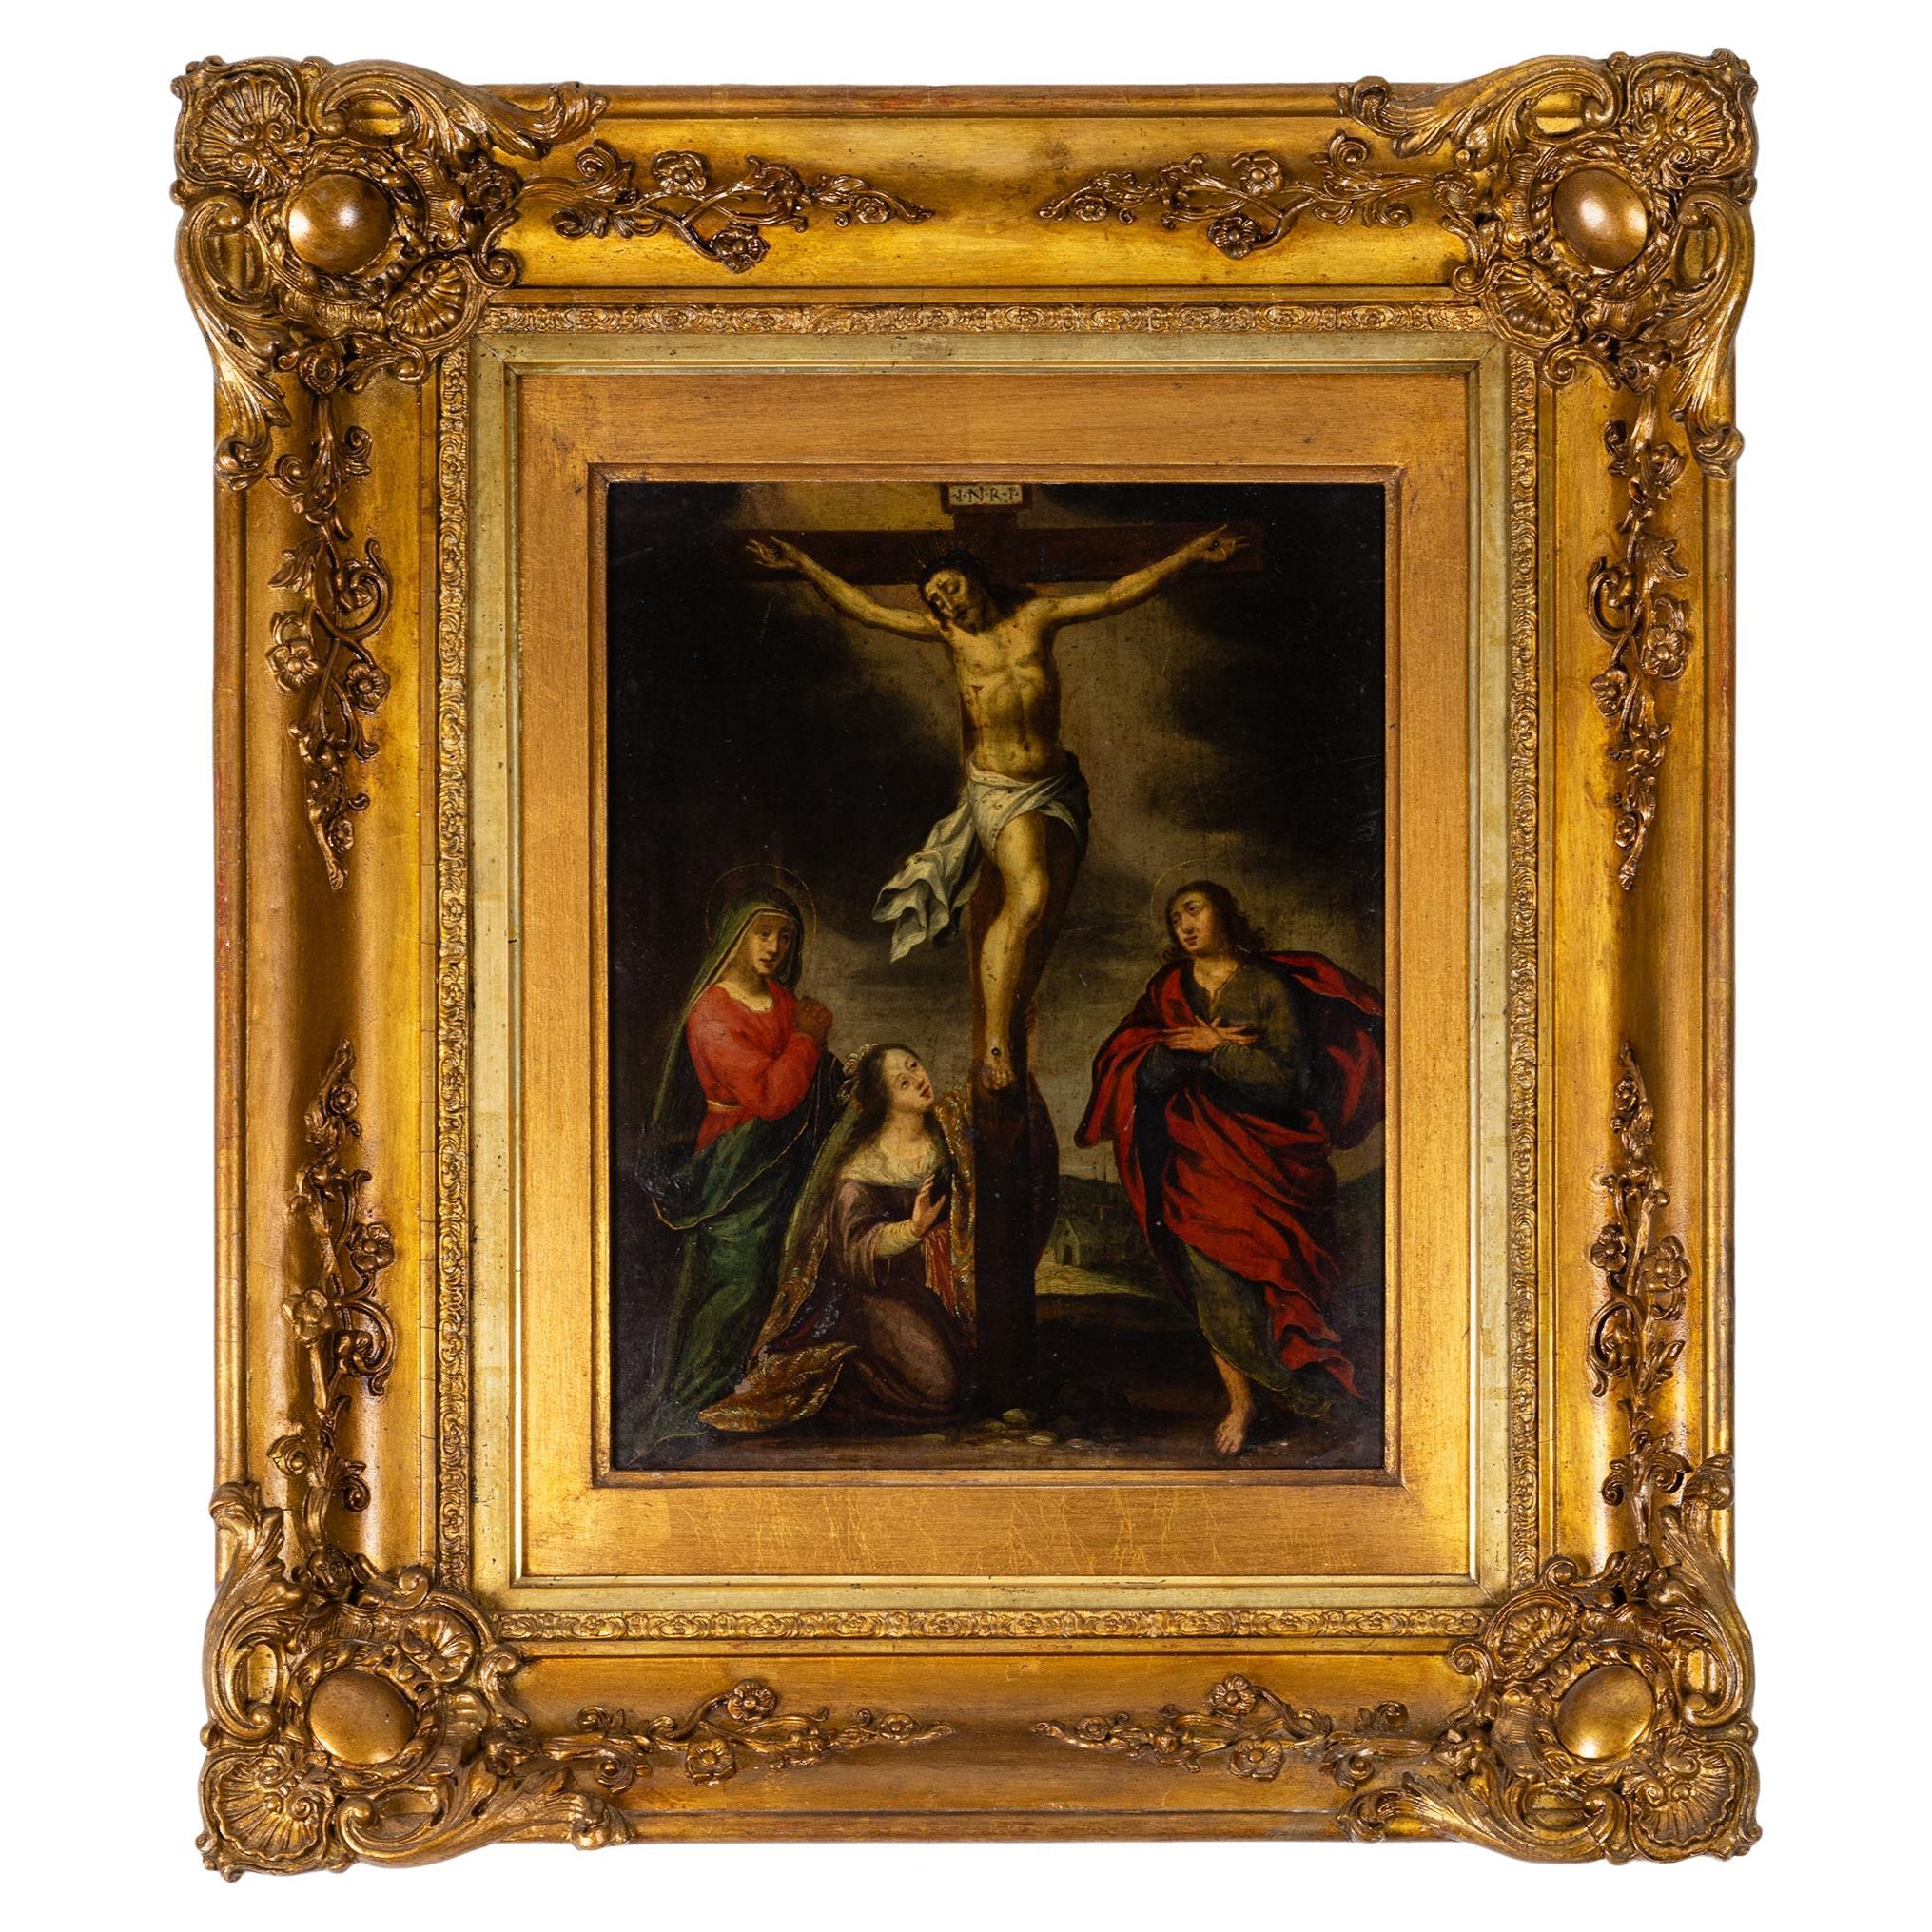 Peinture baroque de la crucifixion du Christ, 17e siècle - Art religieux